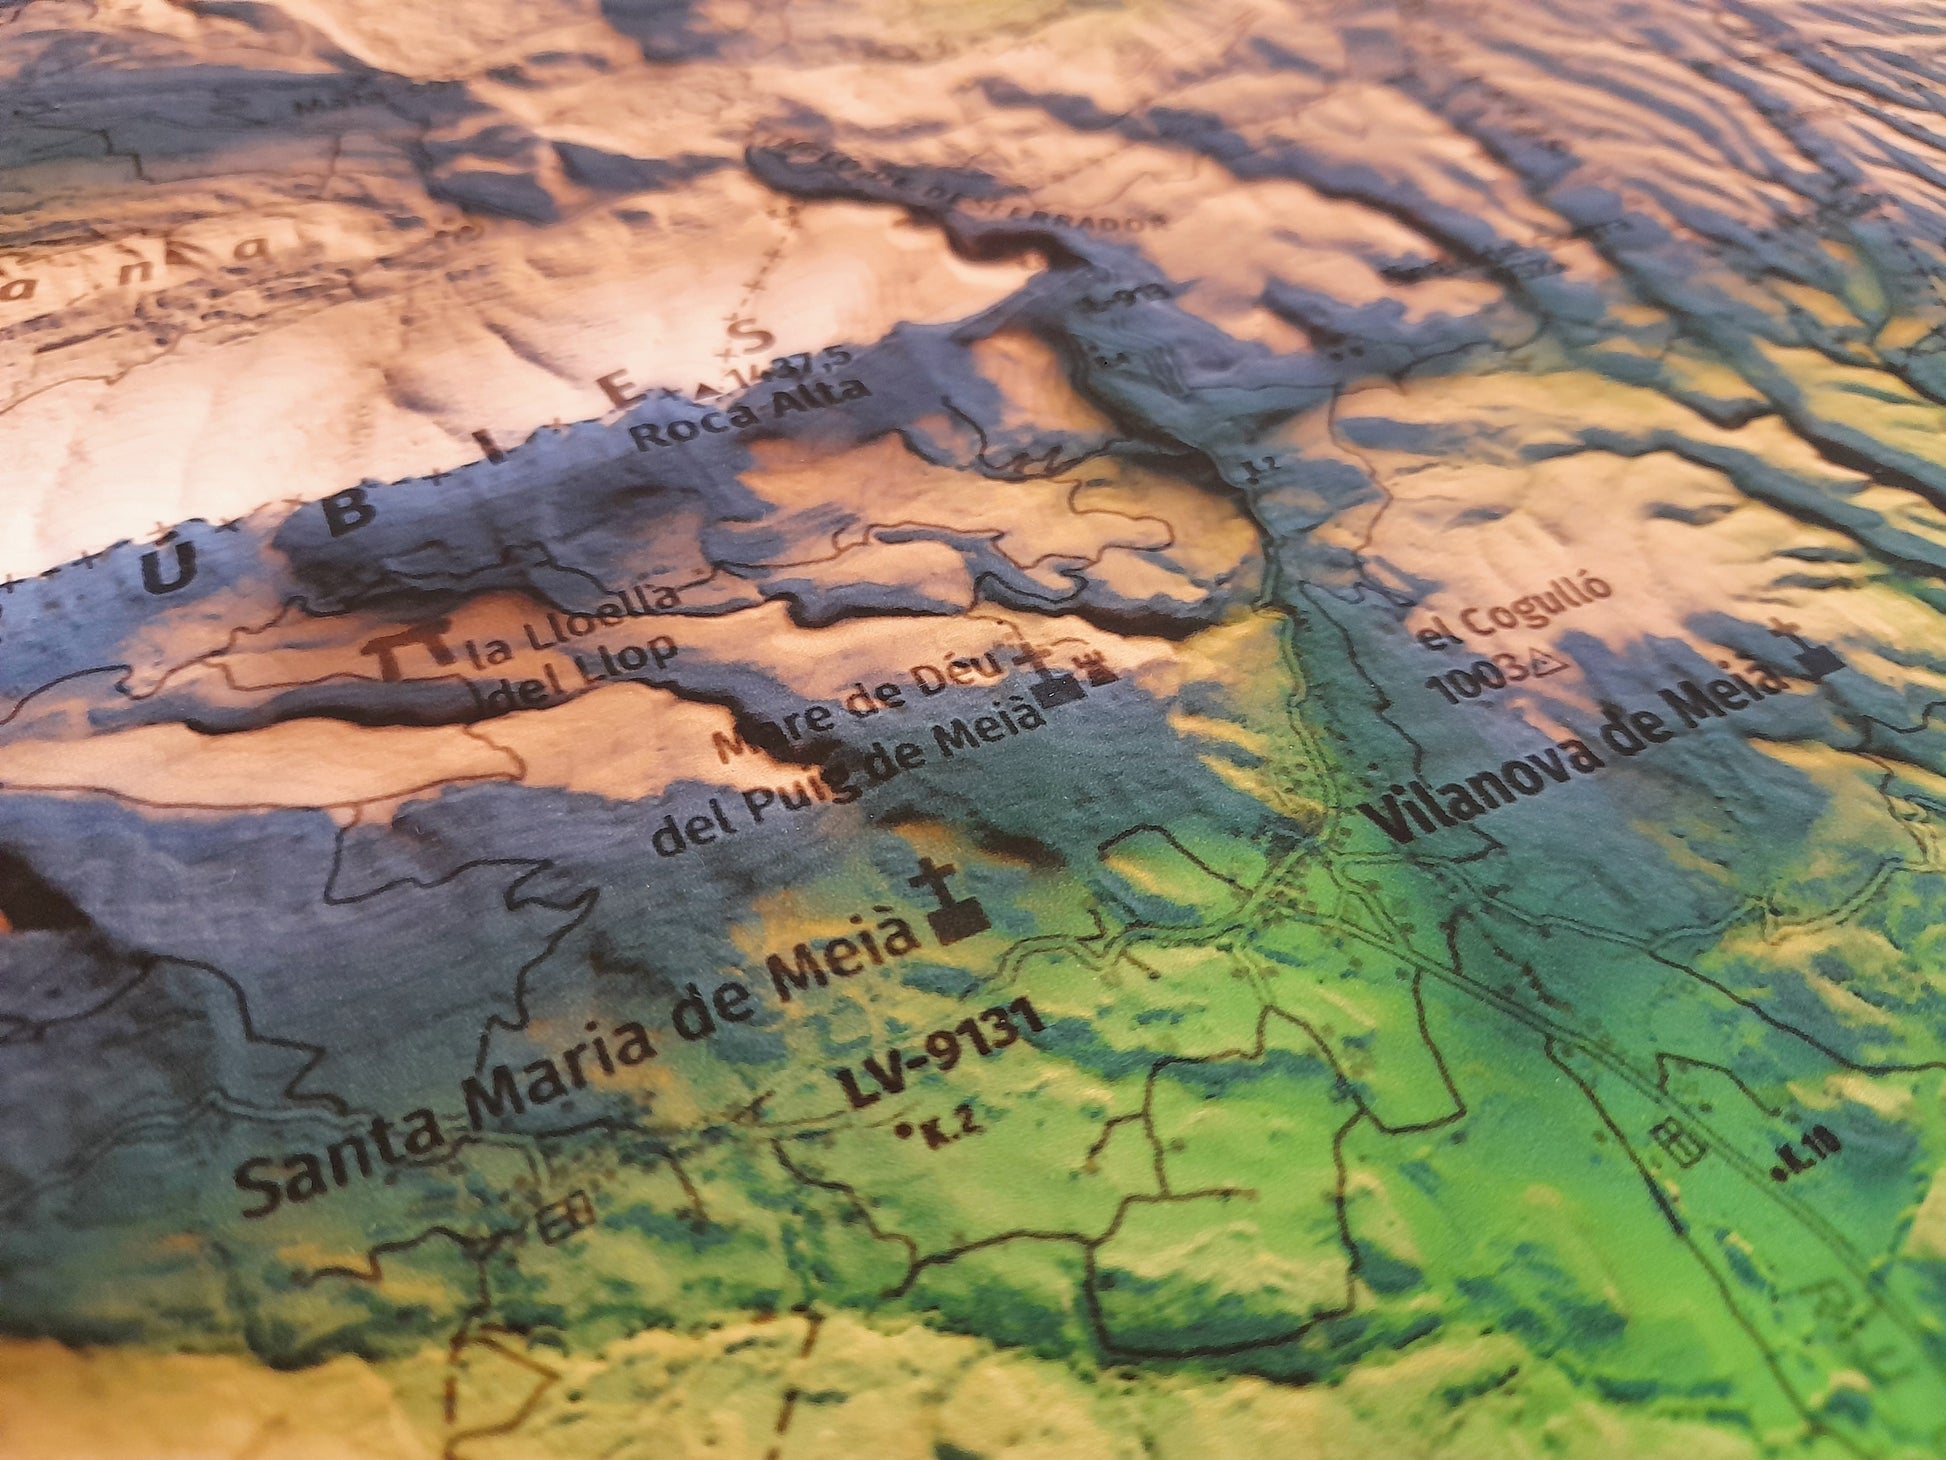 Detall de Vilanova de Meià. Mapa imprès que inclou tota la Serra del Montsec, que inclou Montsec de l'Estall, Montsec d'Ares i Montsec de Rúbies (o de Meià). El mapa es presenta en un estil minimalista i elegant, amb un detallat modelatge d'elevacions terrestres mapa imprès que abasta tota la Serra del Montsec, que inclou Montsec de l'Estall, Montsec d'Ares i Montsec de Rúbies (o de Meià). El mapa es presenta en un estil minimalista i elegant, amb un modelat detallat d'elevacions terrestres.